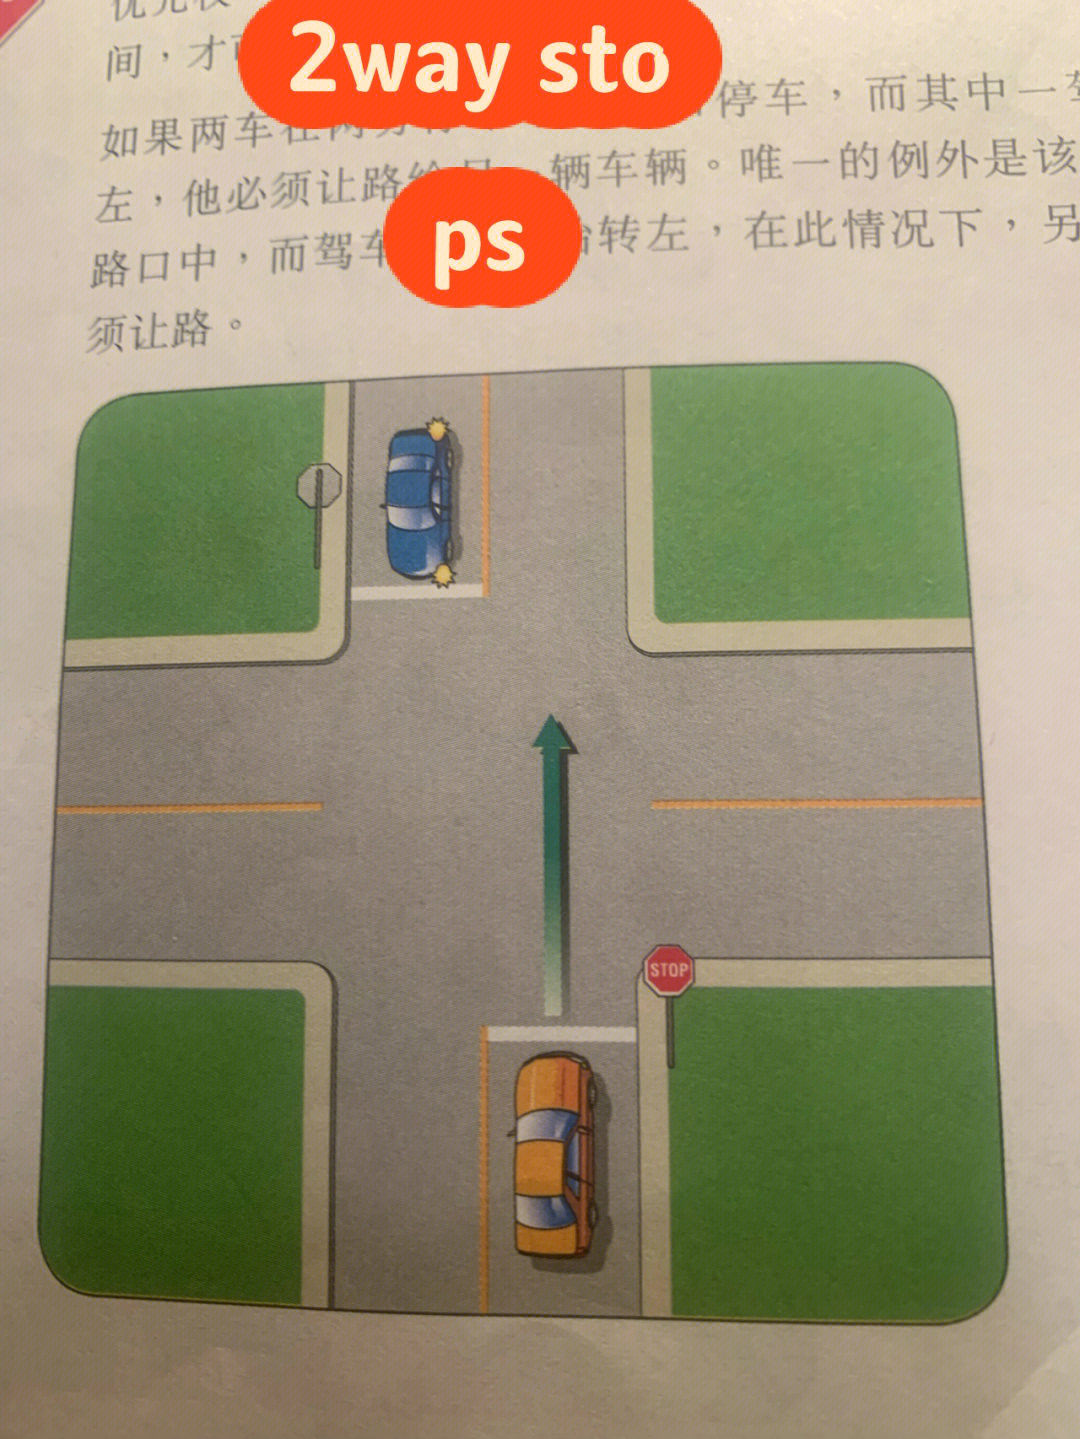 有路权3,除非有stop sign的车,已处于十字路口中,准备左转